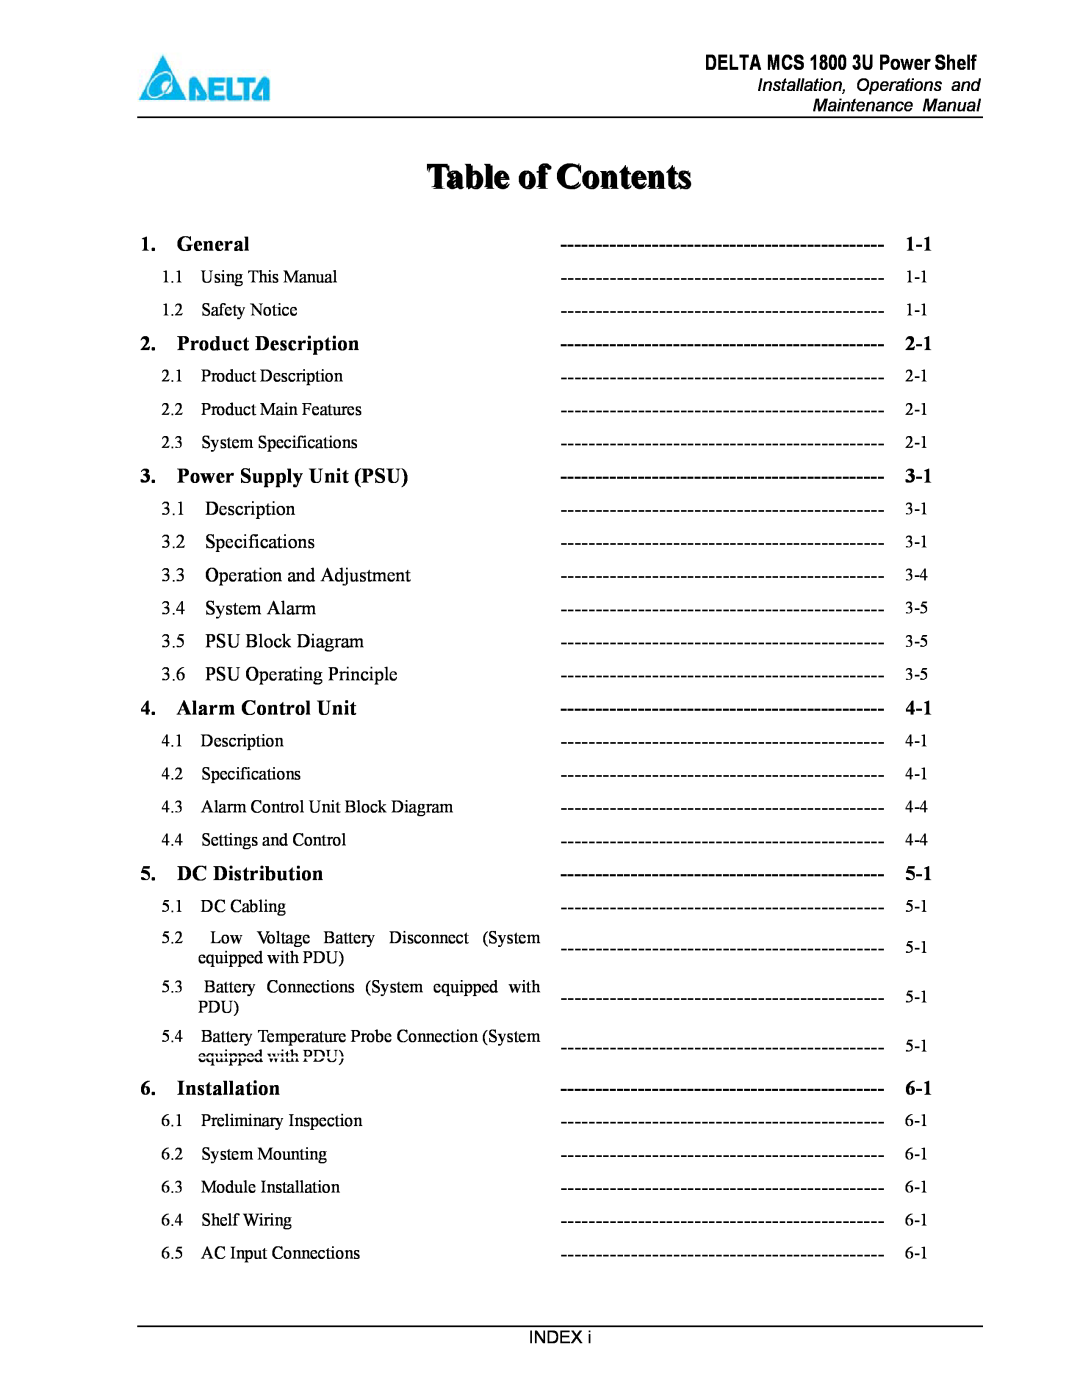 Delta MCS-1800 manual Table of Contents, DELTA MCS 1800 3U Power Shelf, General, Product Description, Power Supply Unit PSU 